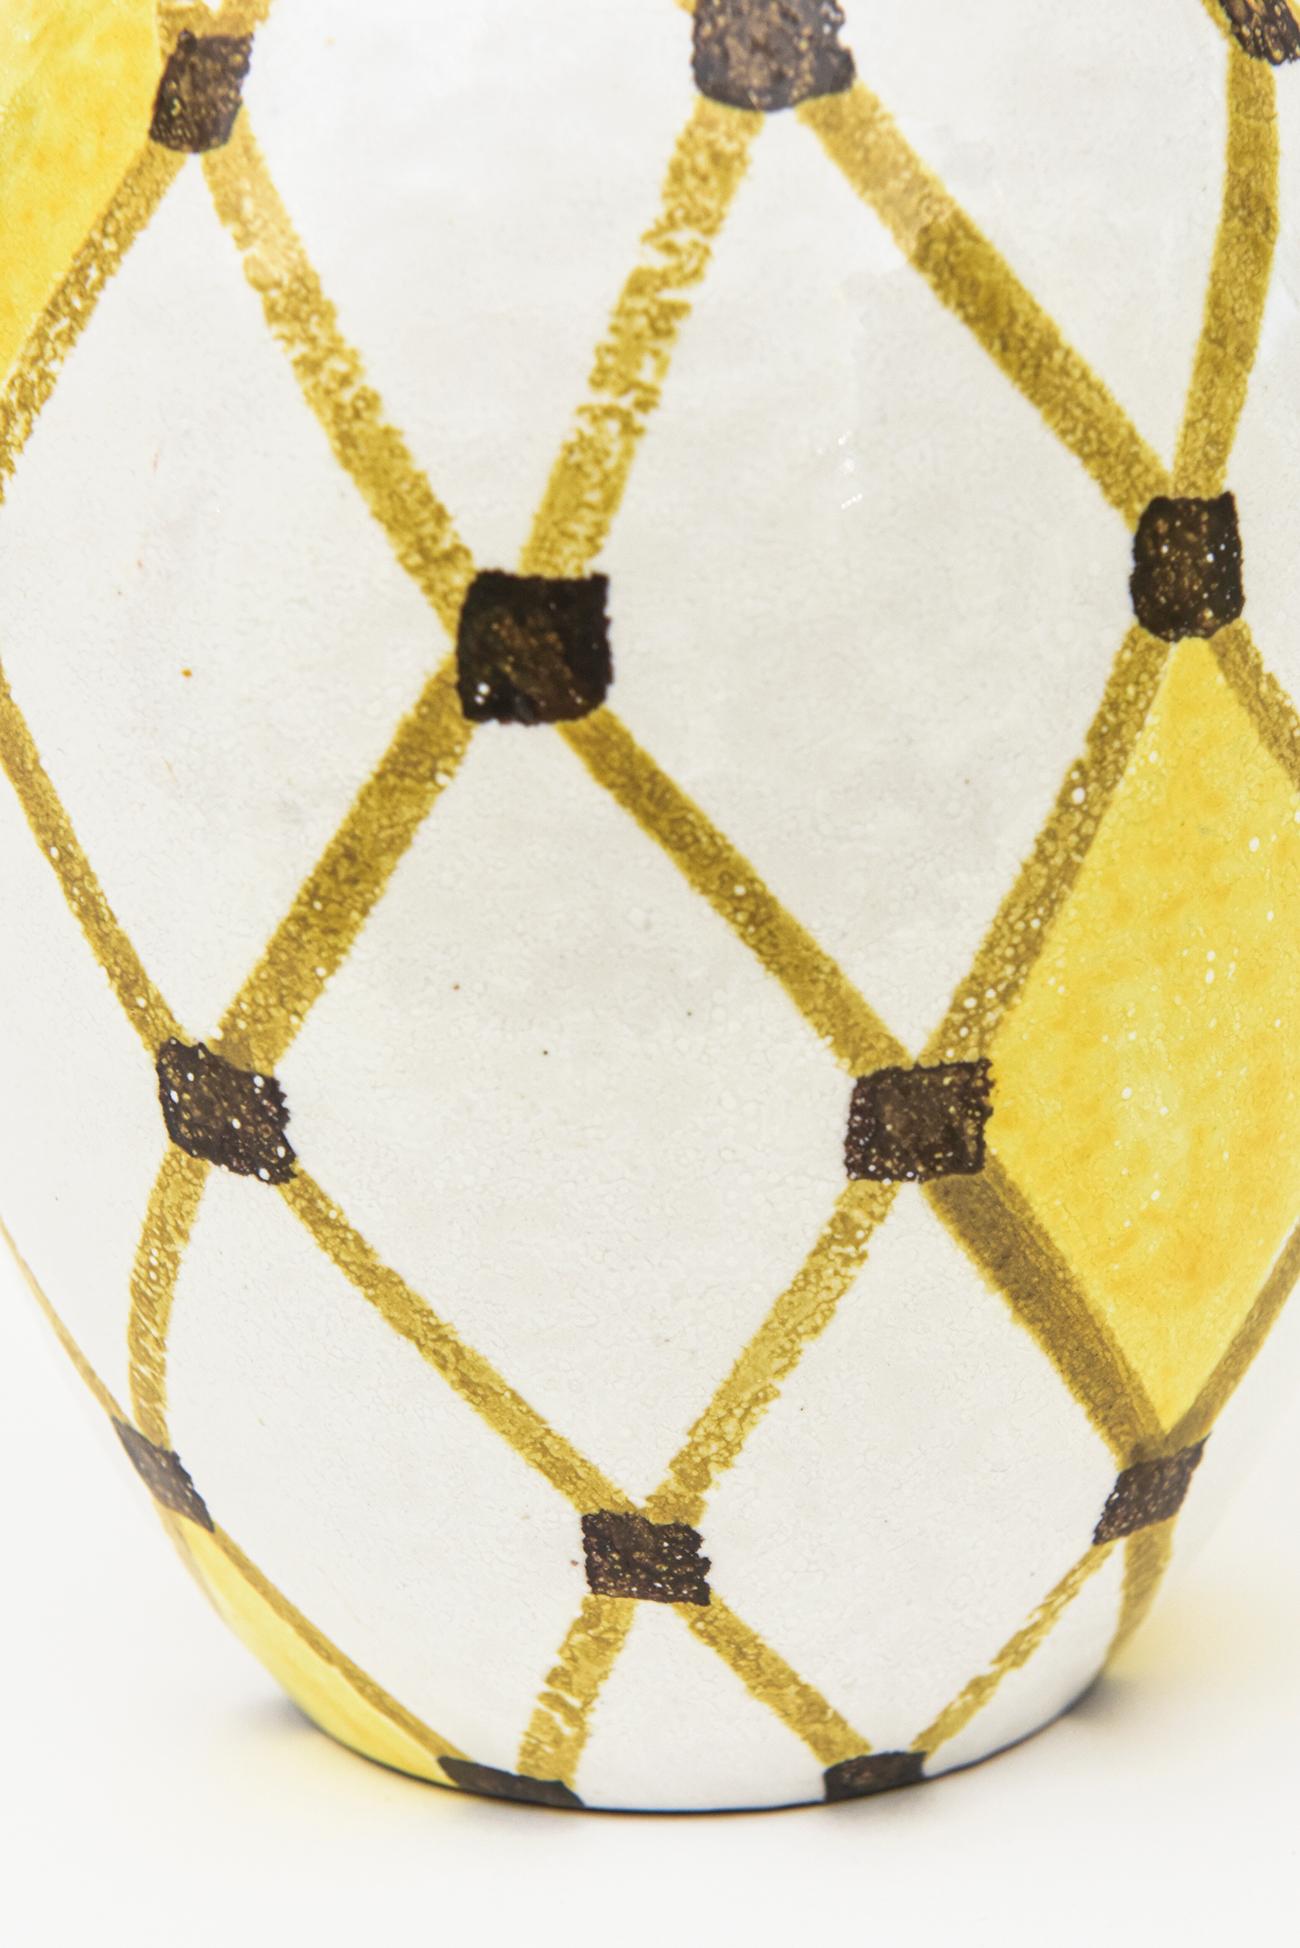 Italian Vintage Bitossi Ceramic Diamond Patterned Angled Vase Or Vessel 3